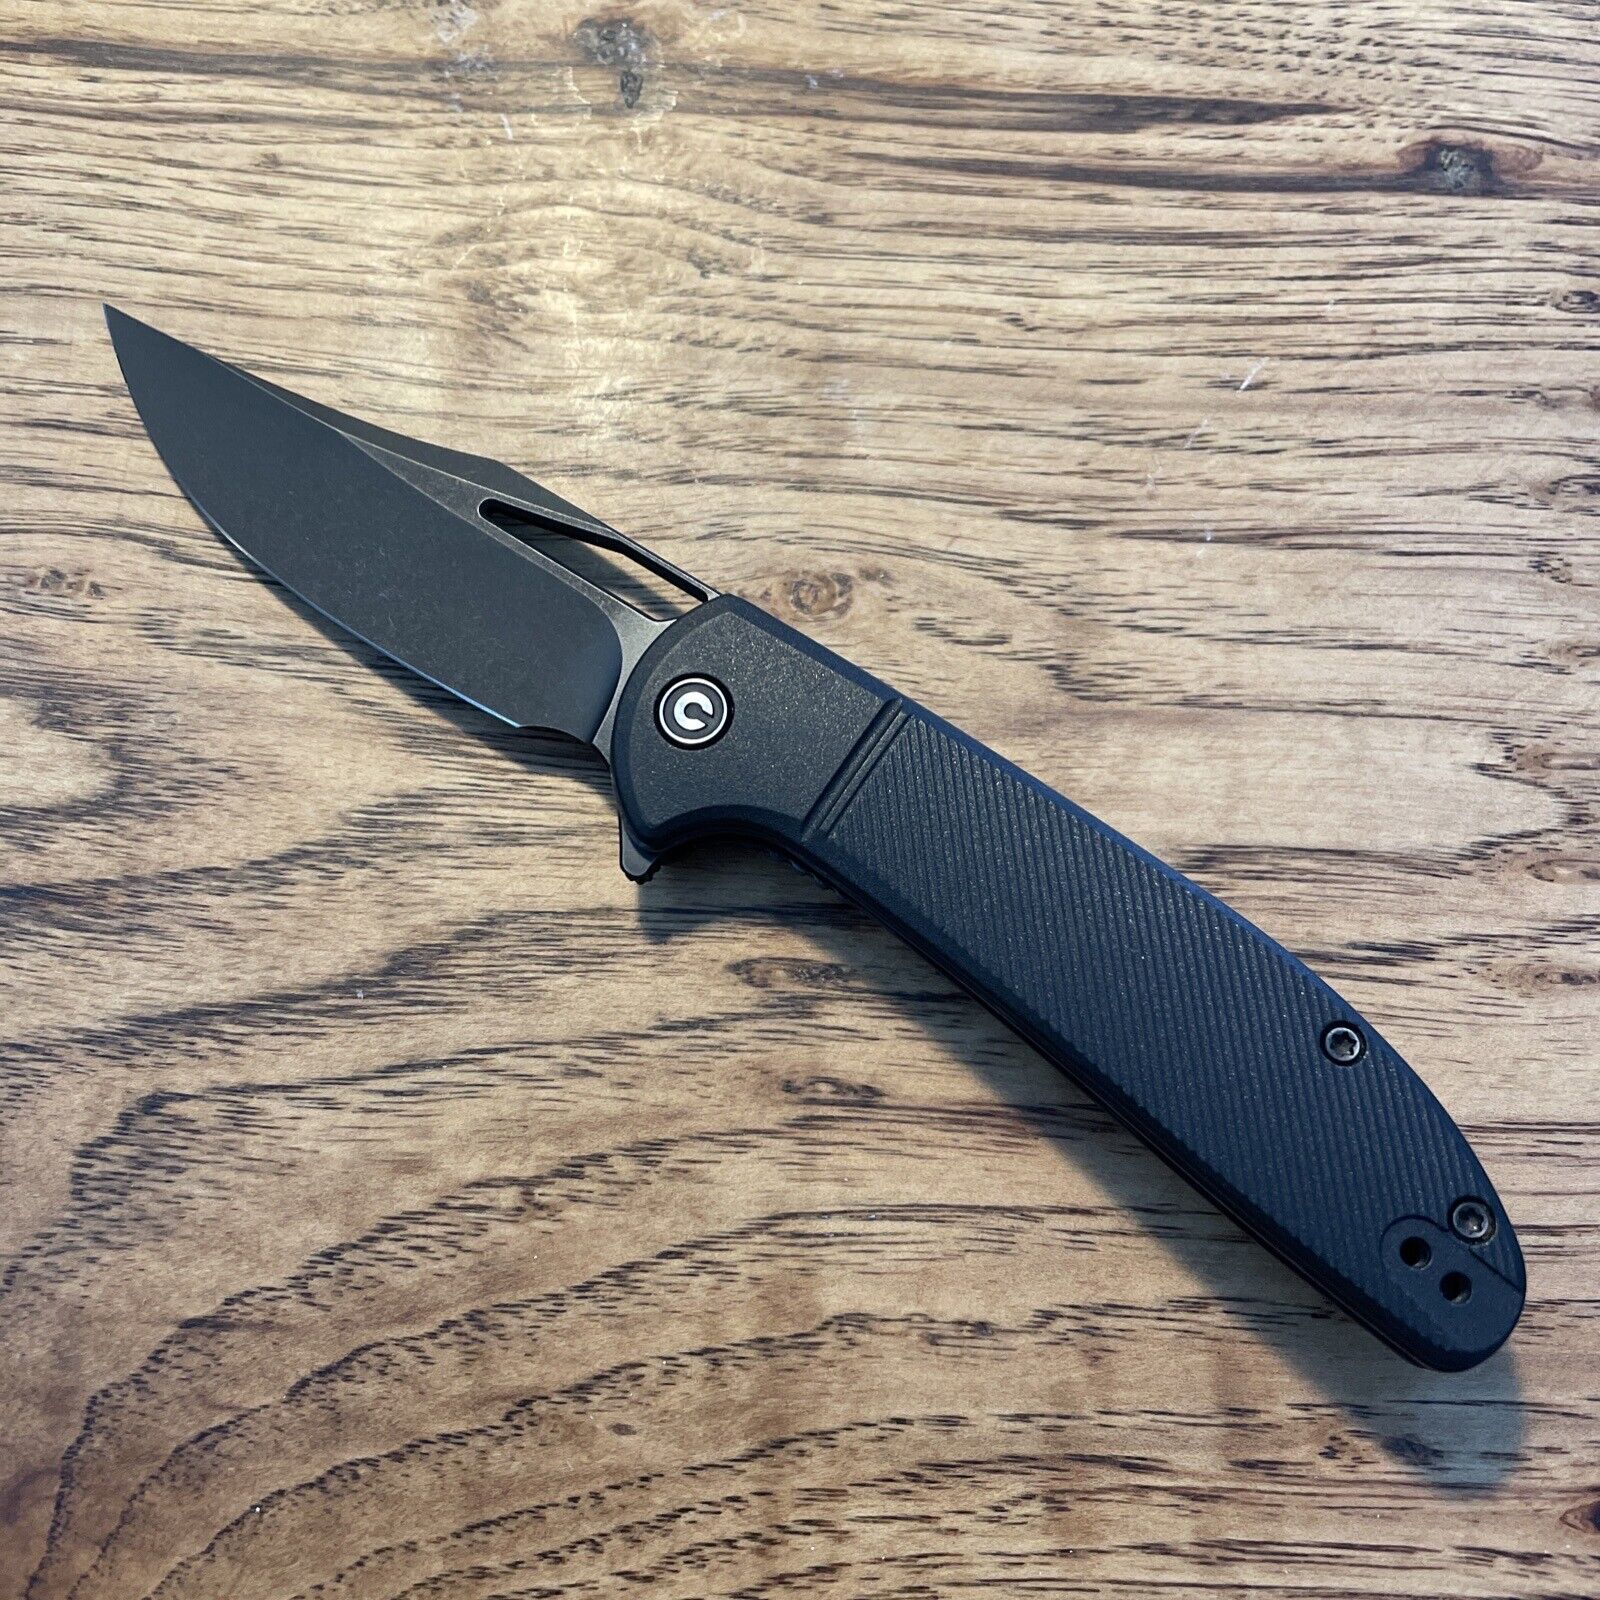 Civivi Ortis Folding Knife - Brand New Blade